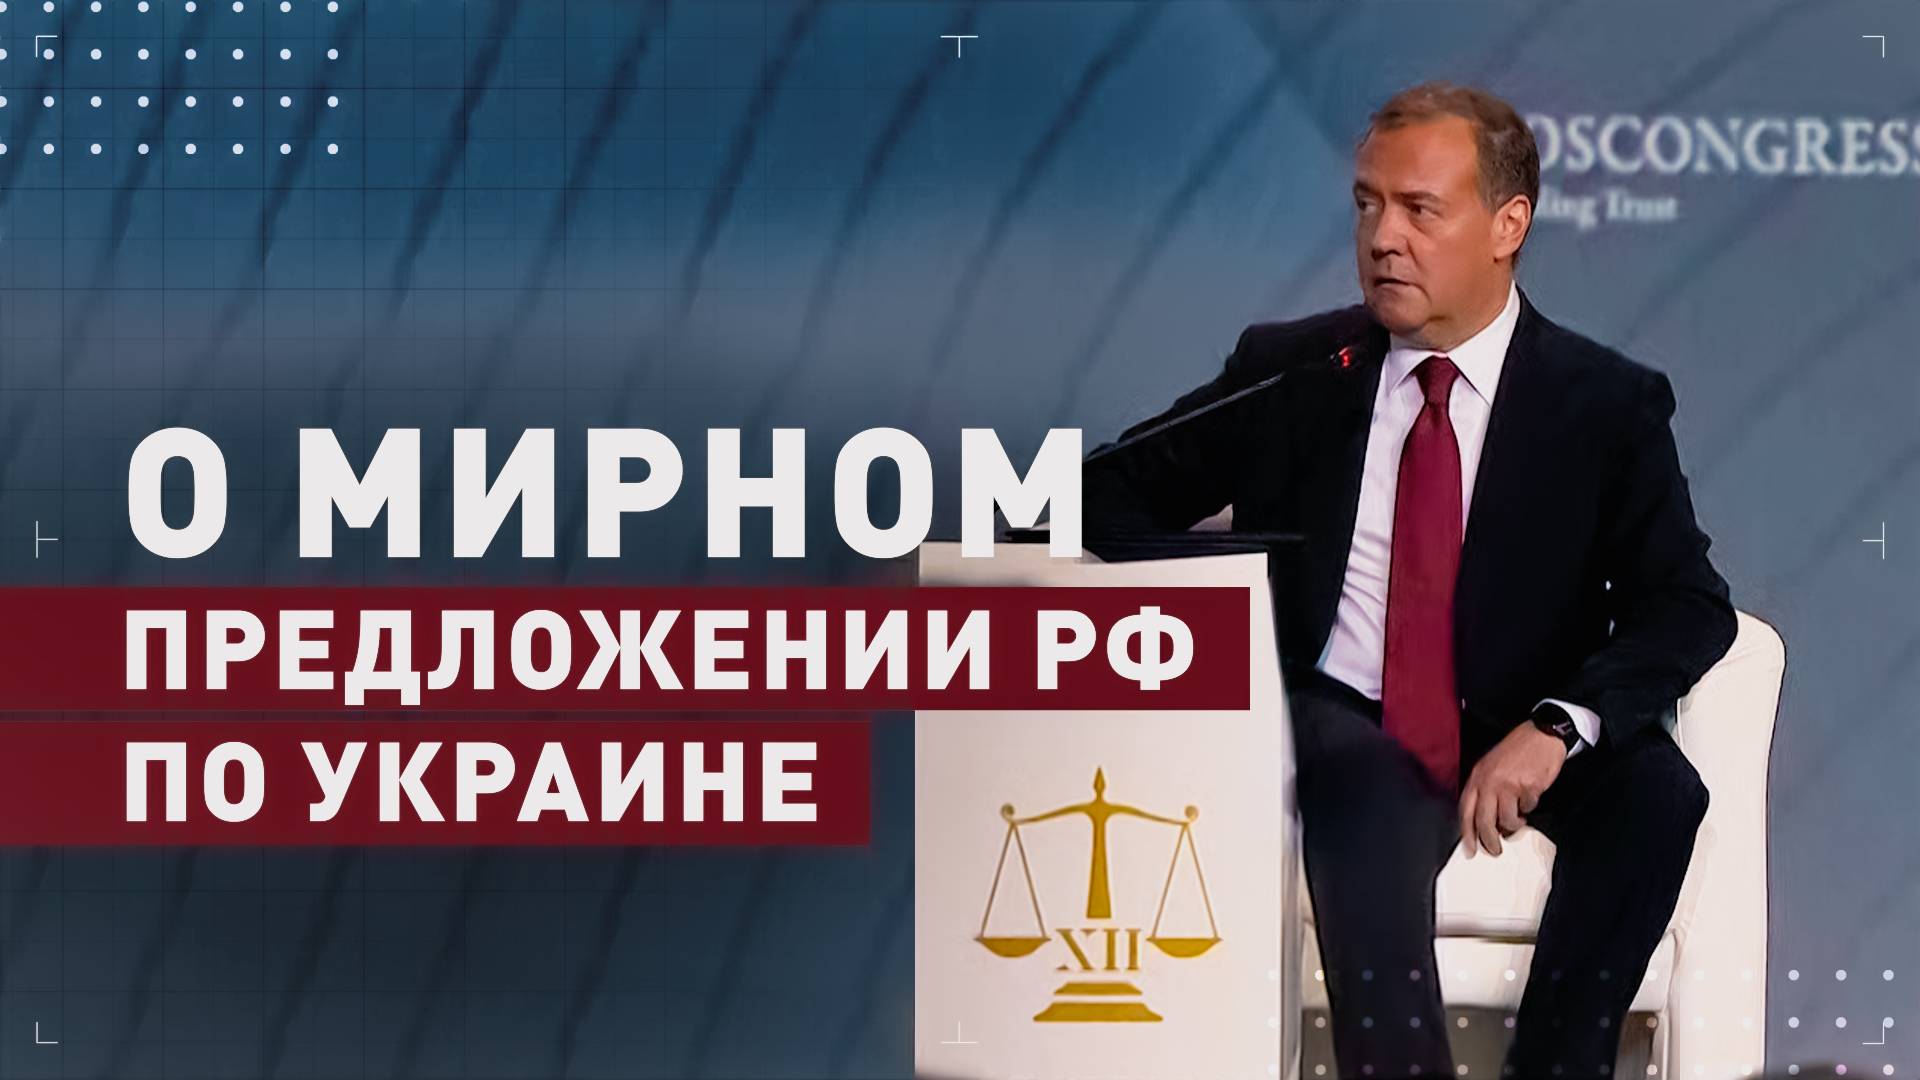 «Предложение носит срочный характер»: Медведев о мирной инициативе РФ по Украине